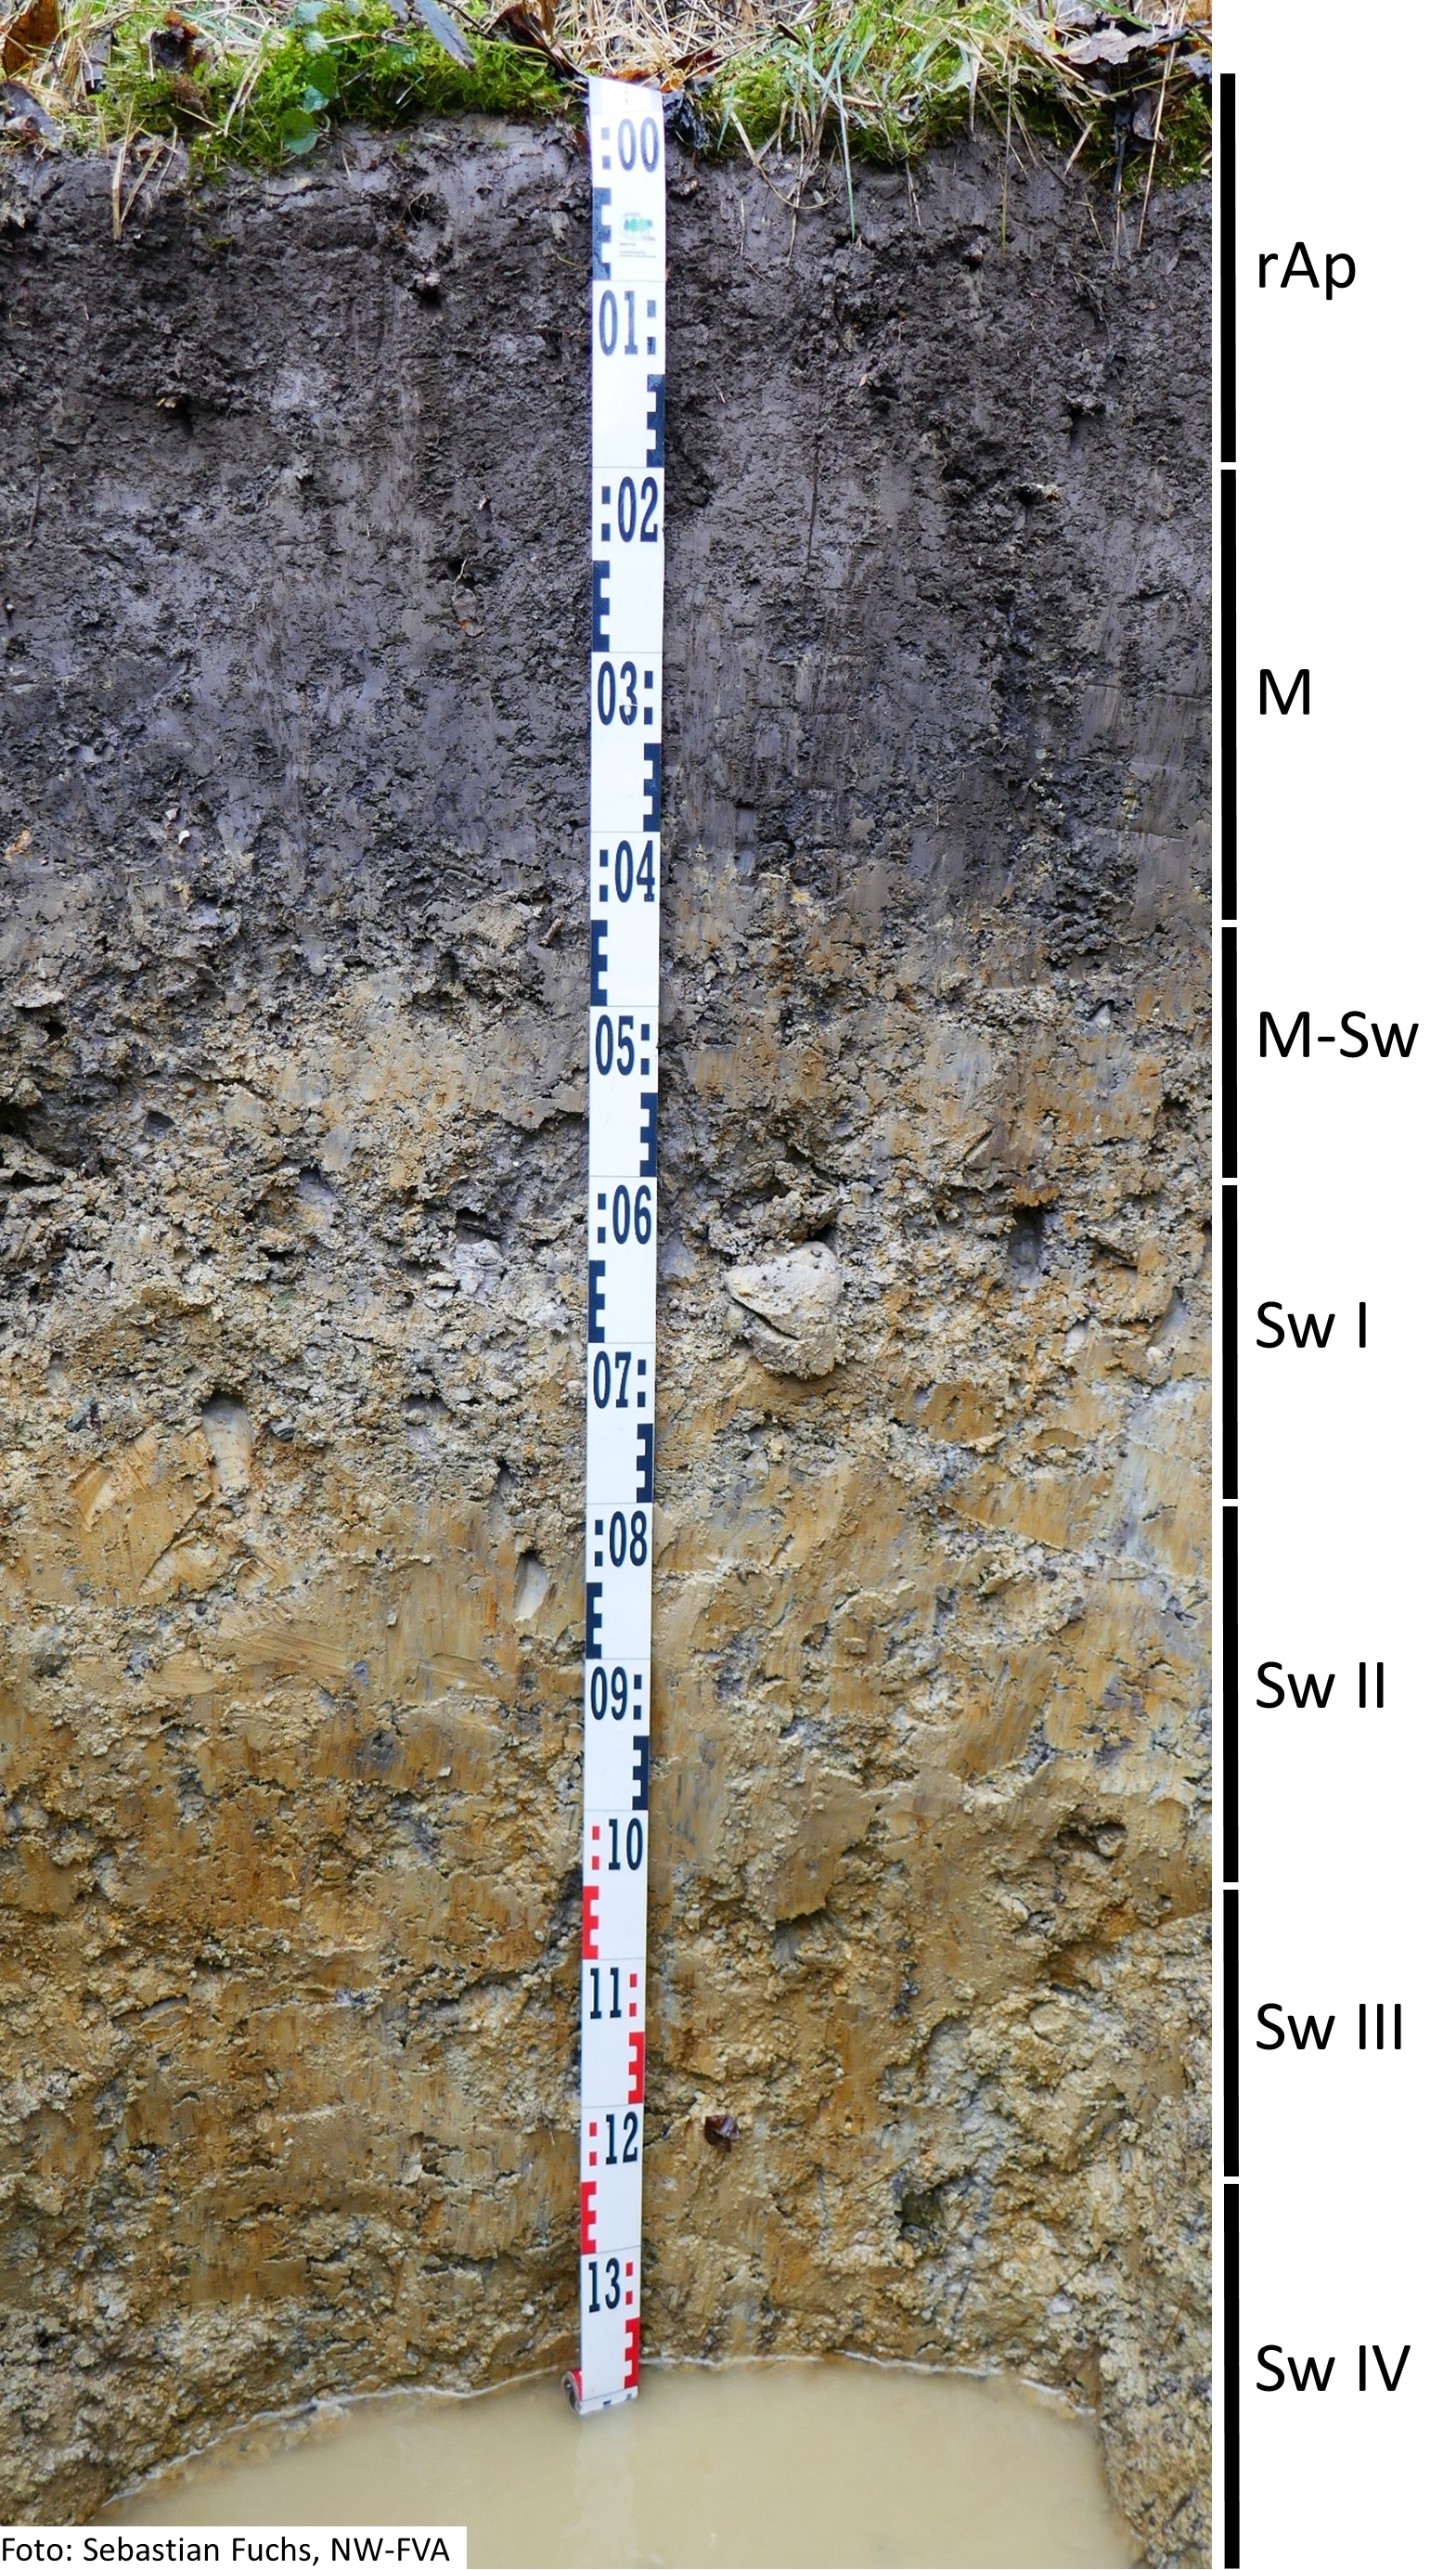 Das Foto zeigt einen senkrechten Schnitt durch den Boden der Untersuchungsfläche. Das Bodenprofil enthält folgende Bodenhorizonte: rAp, M, M-Sw, Sw I, Sw II, Sw III, Sw IV